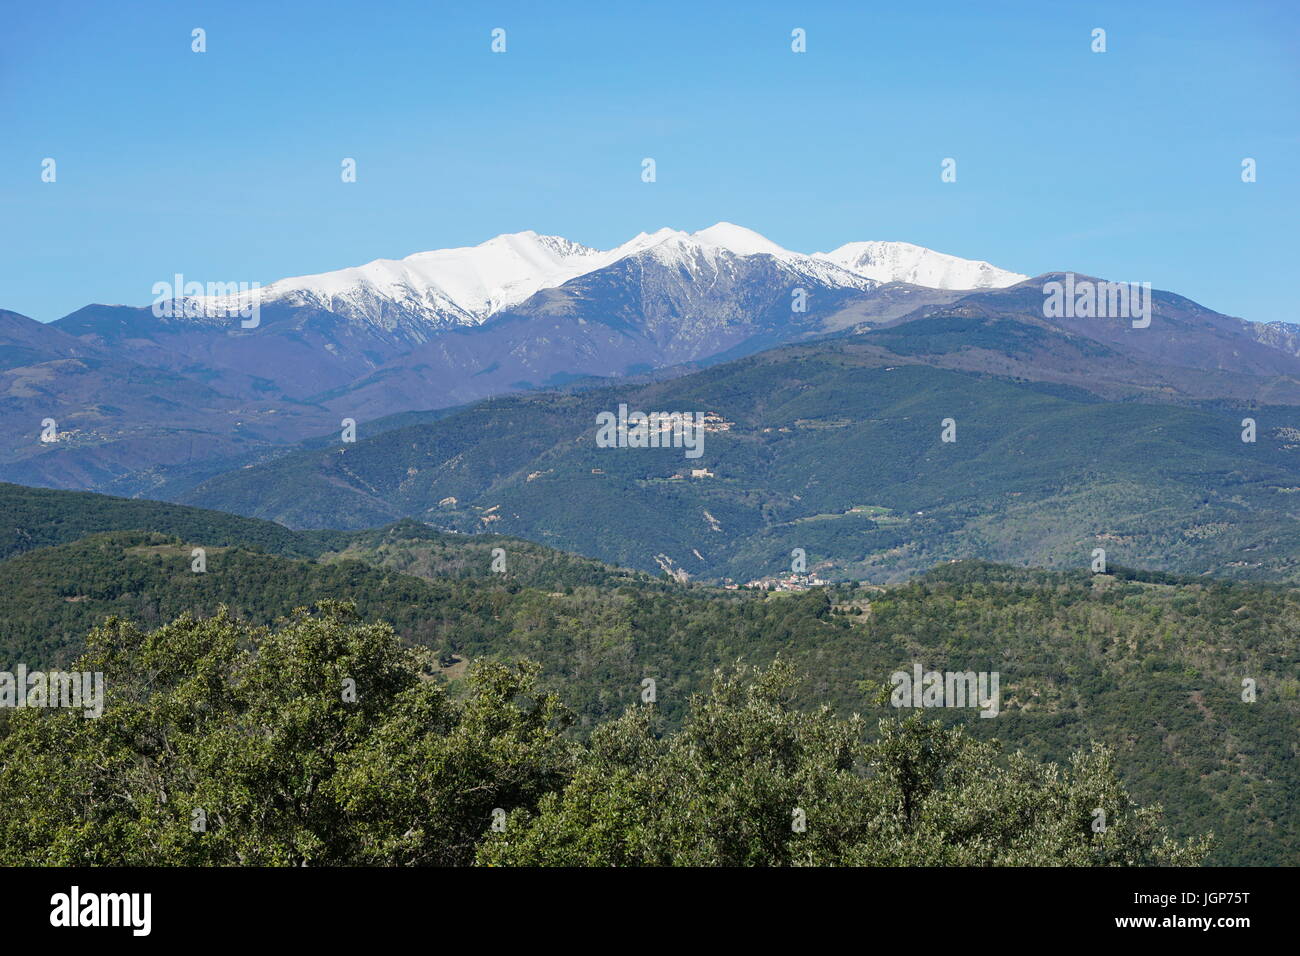 Paysage de montagne, le Canigou situé dans les Pyrénées du sud de la France, Pyrenees Orientales Banque D'Images